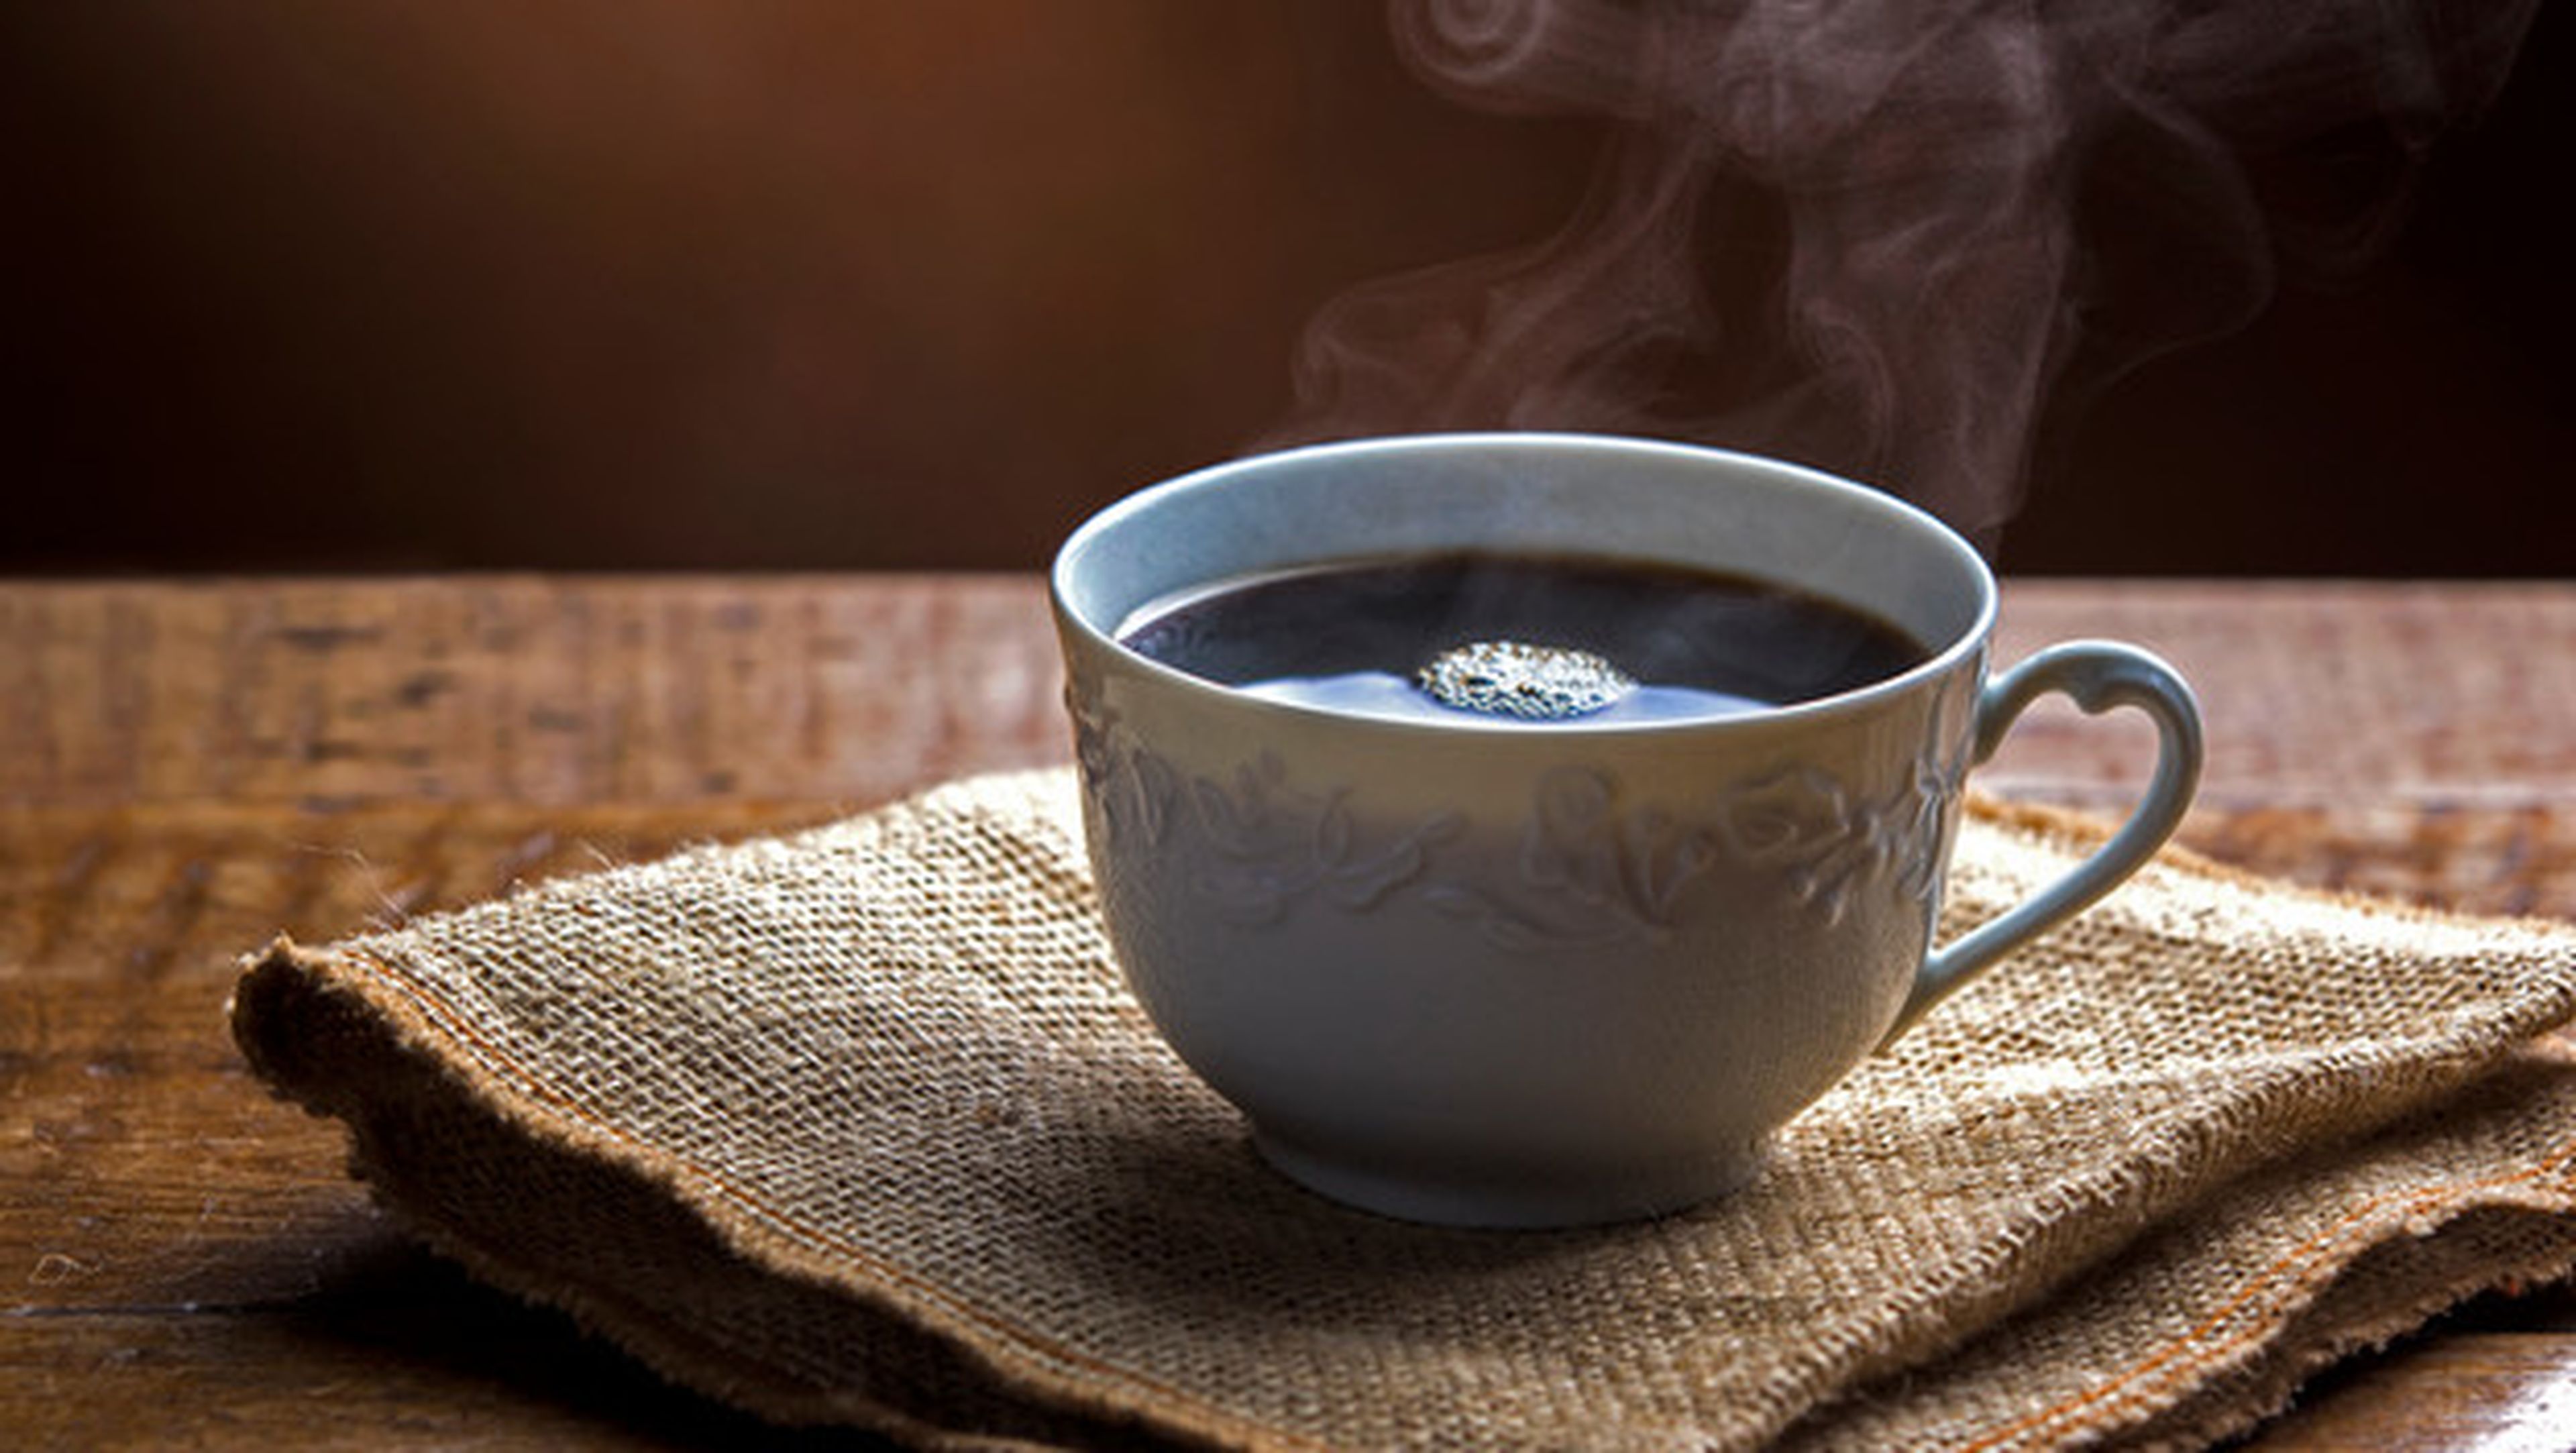 Trucos y consejos para preparar café según la ciencia.